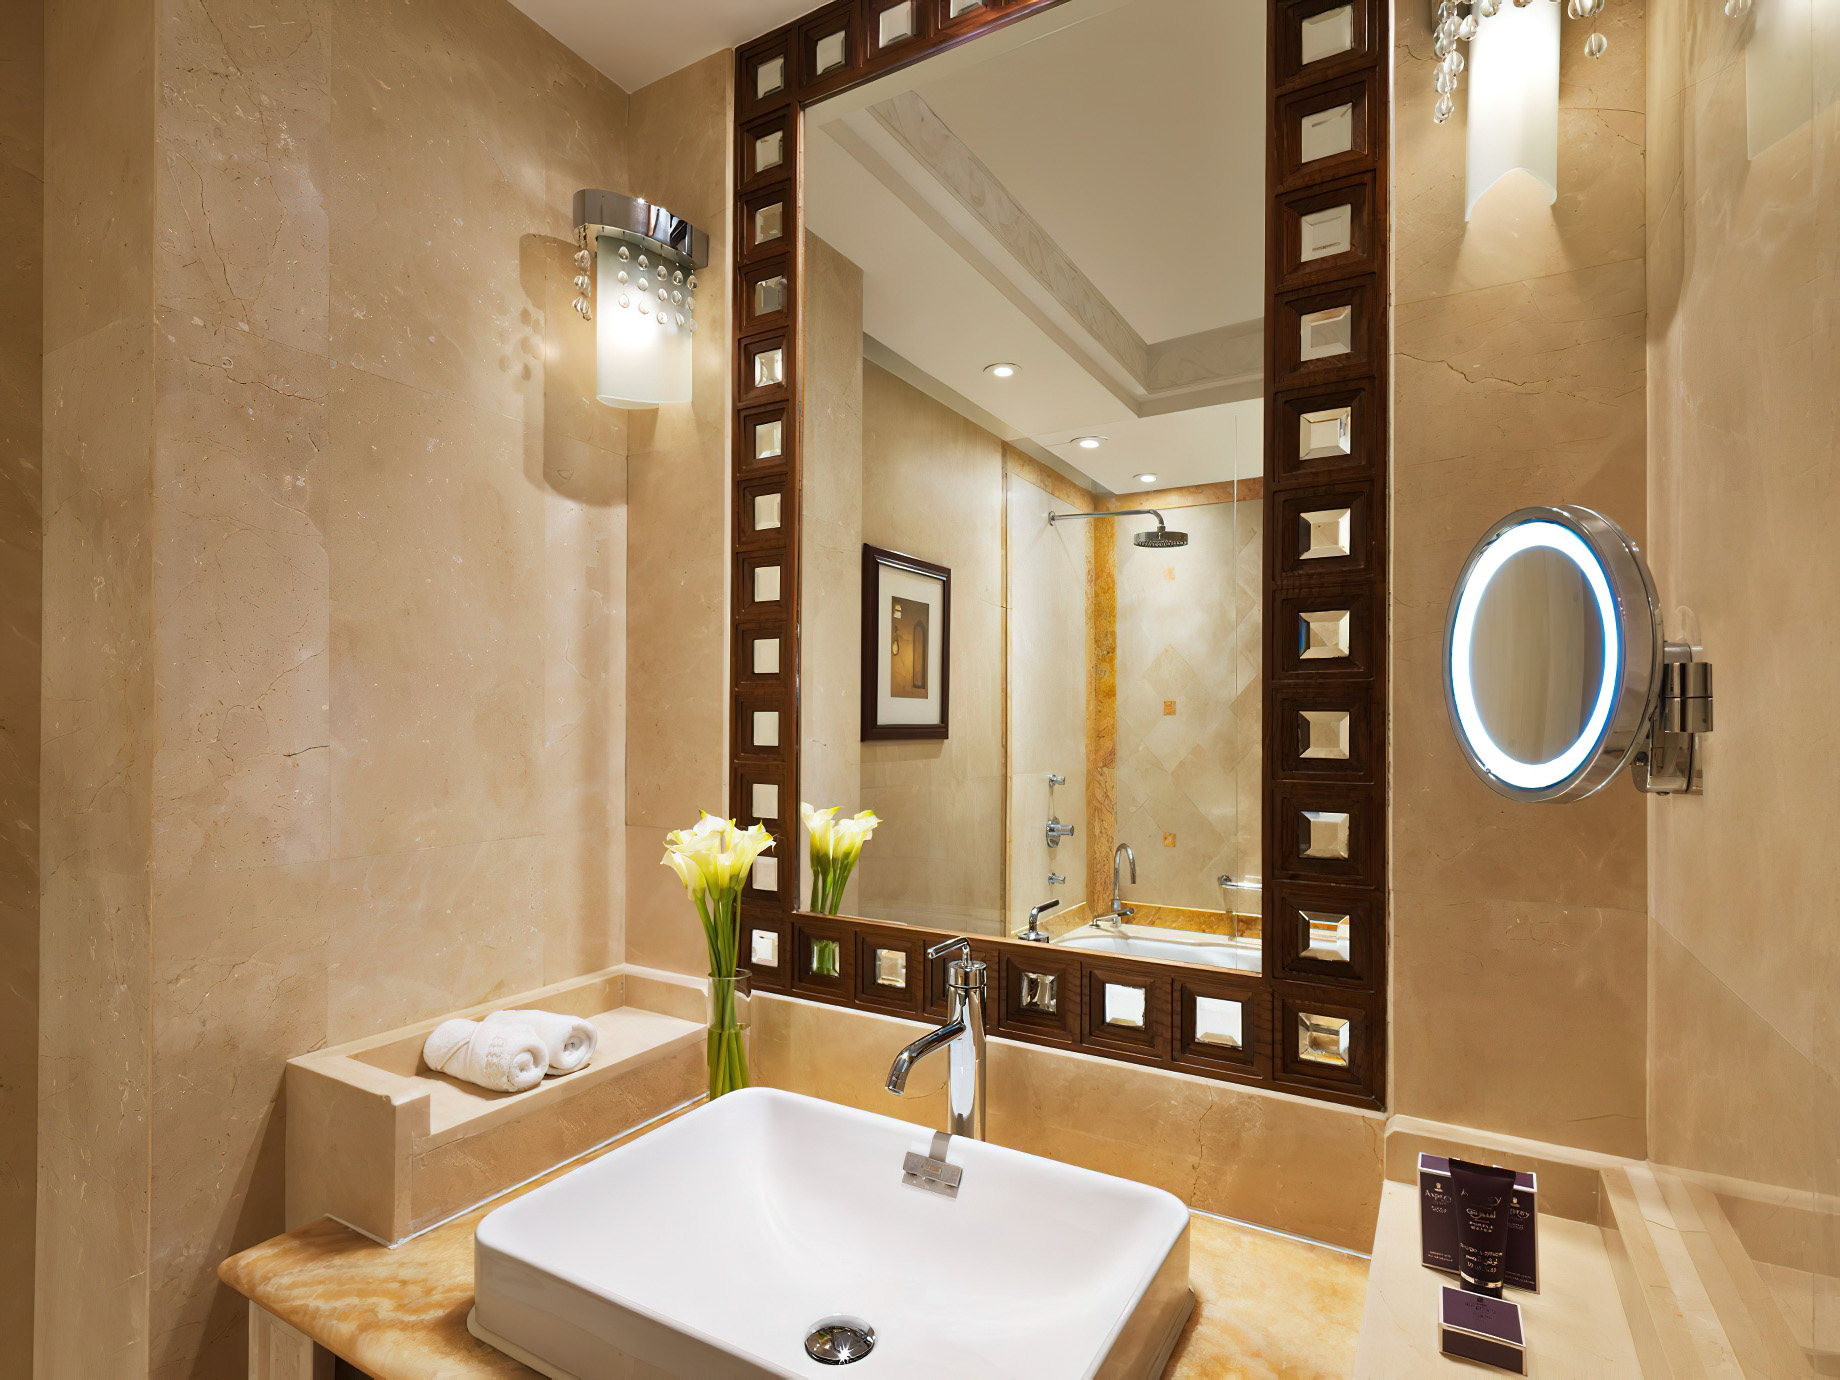 Al Bustan Palace, A Ritz-Carlton Hotel – Muscat, Oman – Deluxe Sea View Room Bathroom